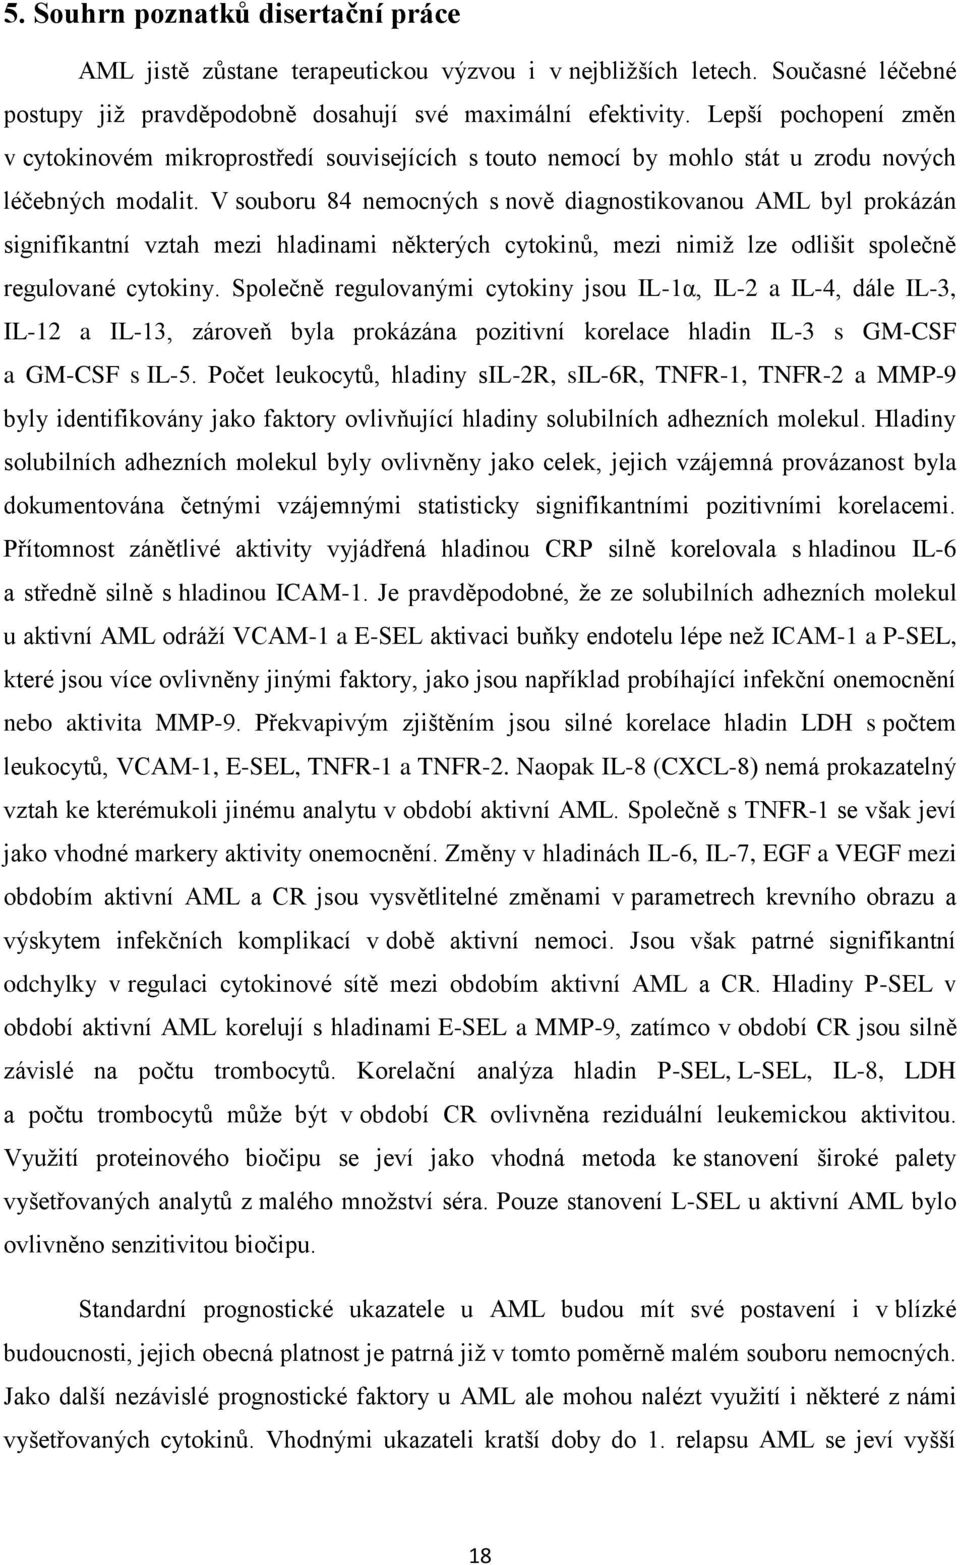 V souboru 84 nemocných s nově diagnostikovanou AML byl prokázán signifikantní vztah mezi hladinami některých cytokinů, mezi nimiž lze odlišit společně regulované cytokiny.